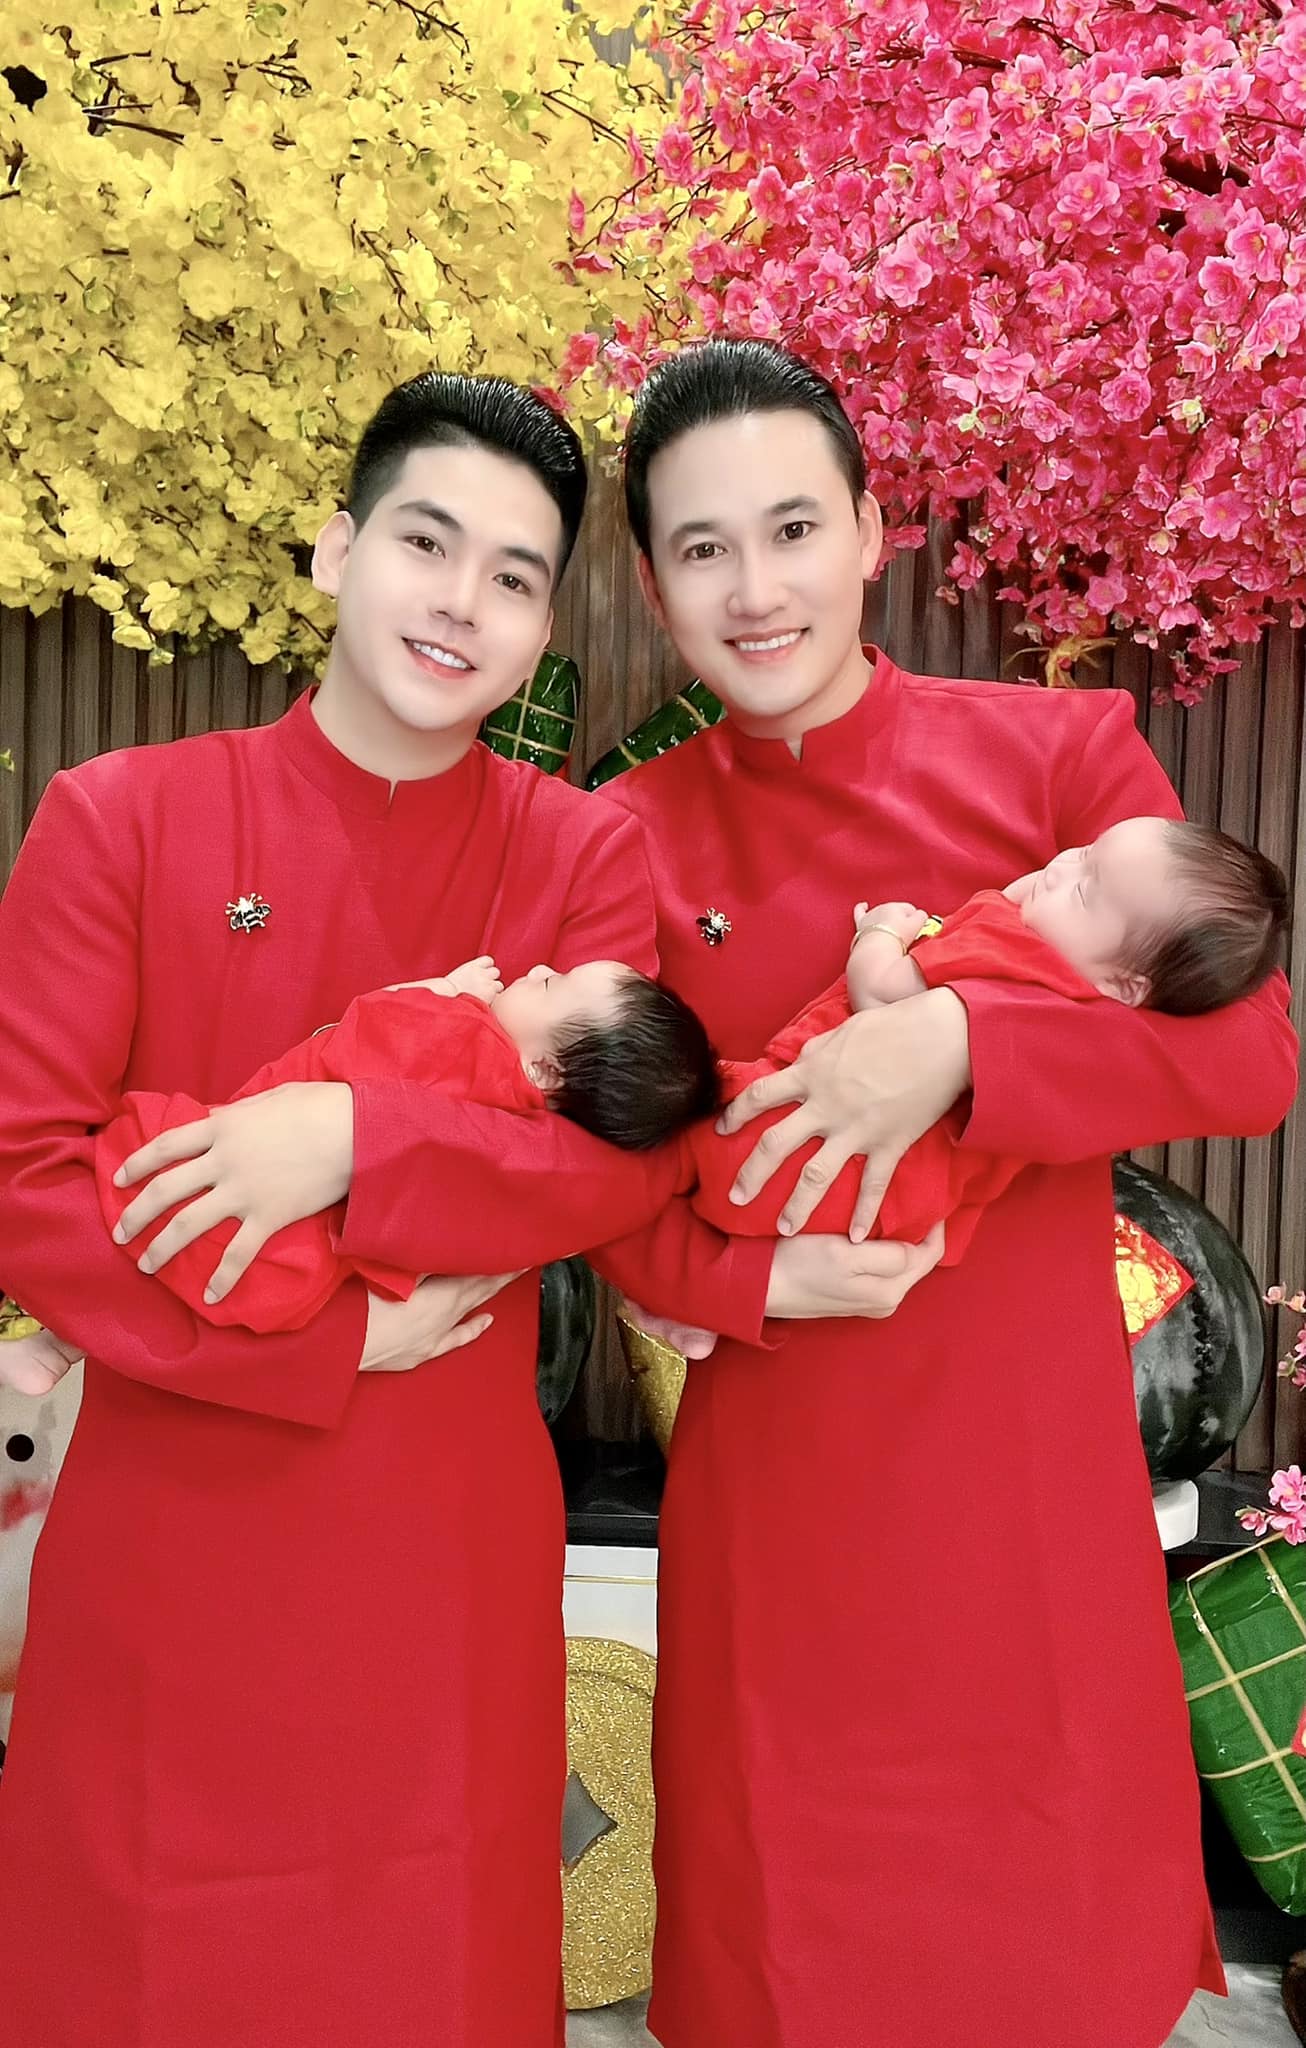 Hà Trí Quang vượt qua “miệng đời”, sống hạnh phúc bên bạn trai và 2 con song sinh - 2